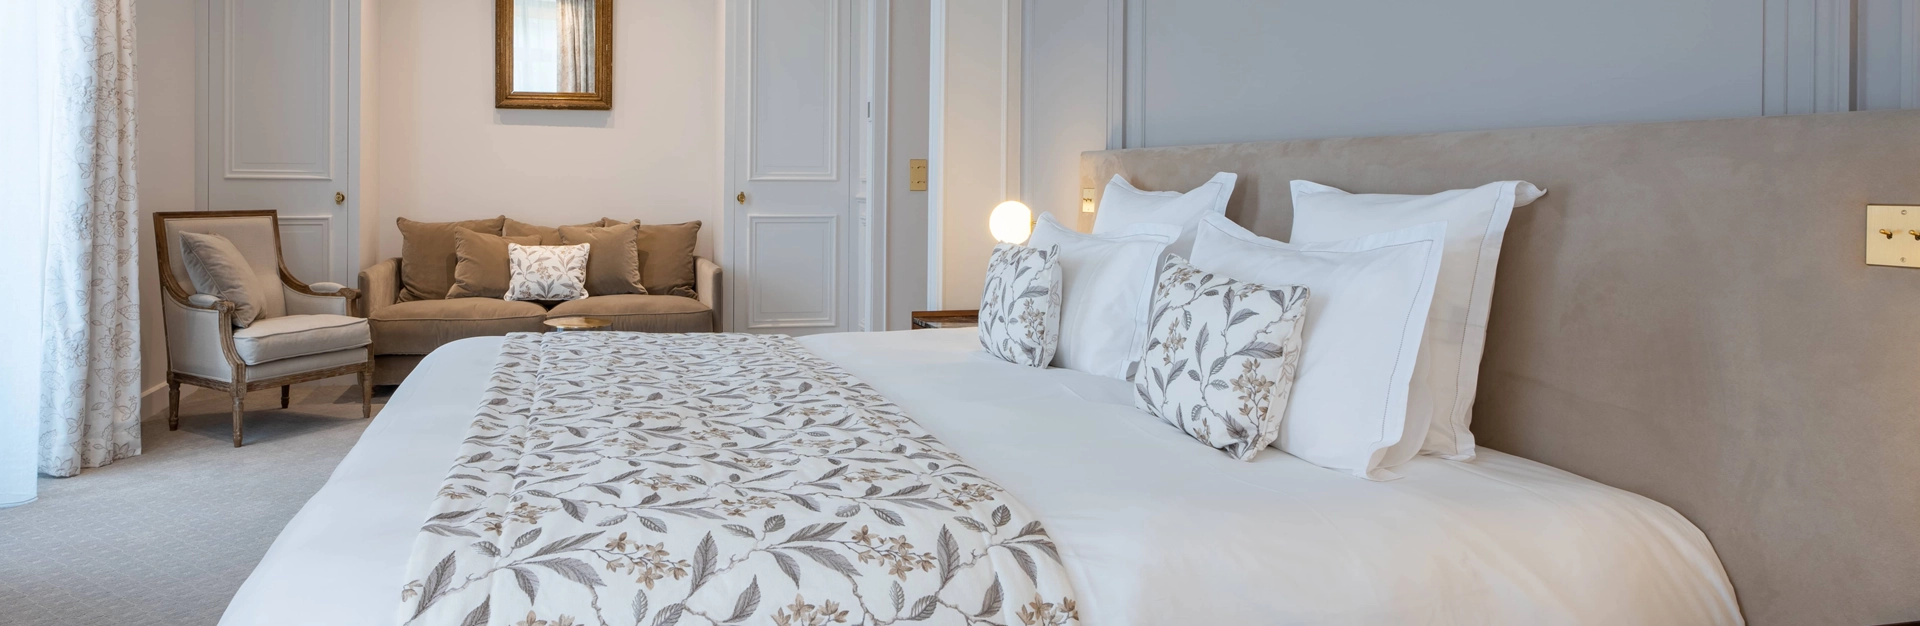 Chambres et suites au Domaine de Rochebois, hôtel 5 étoiles proche de Sarlat la Canéda en Dordogne